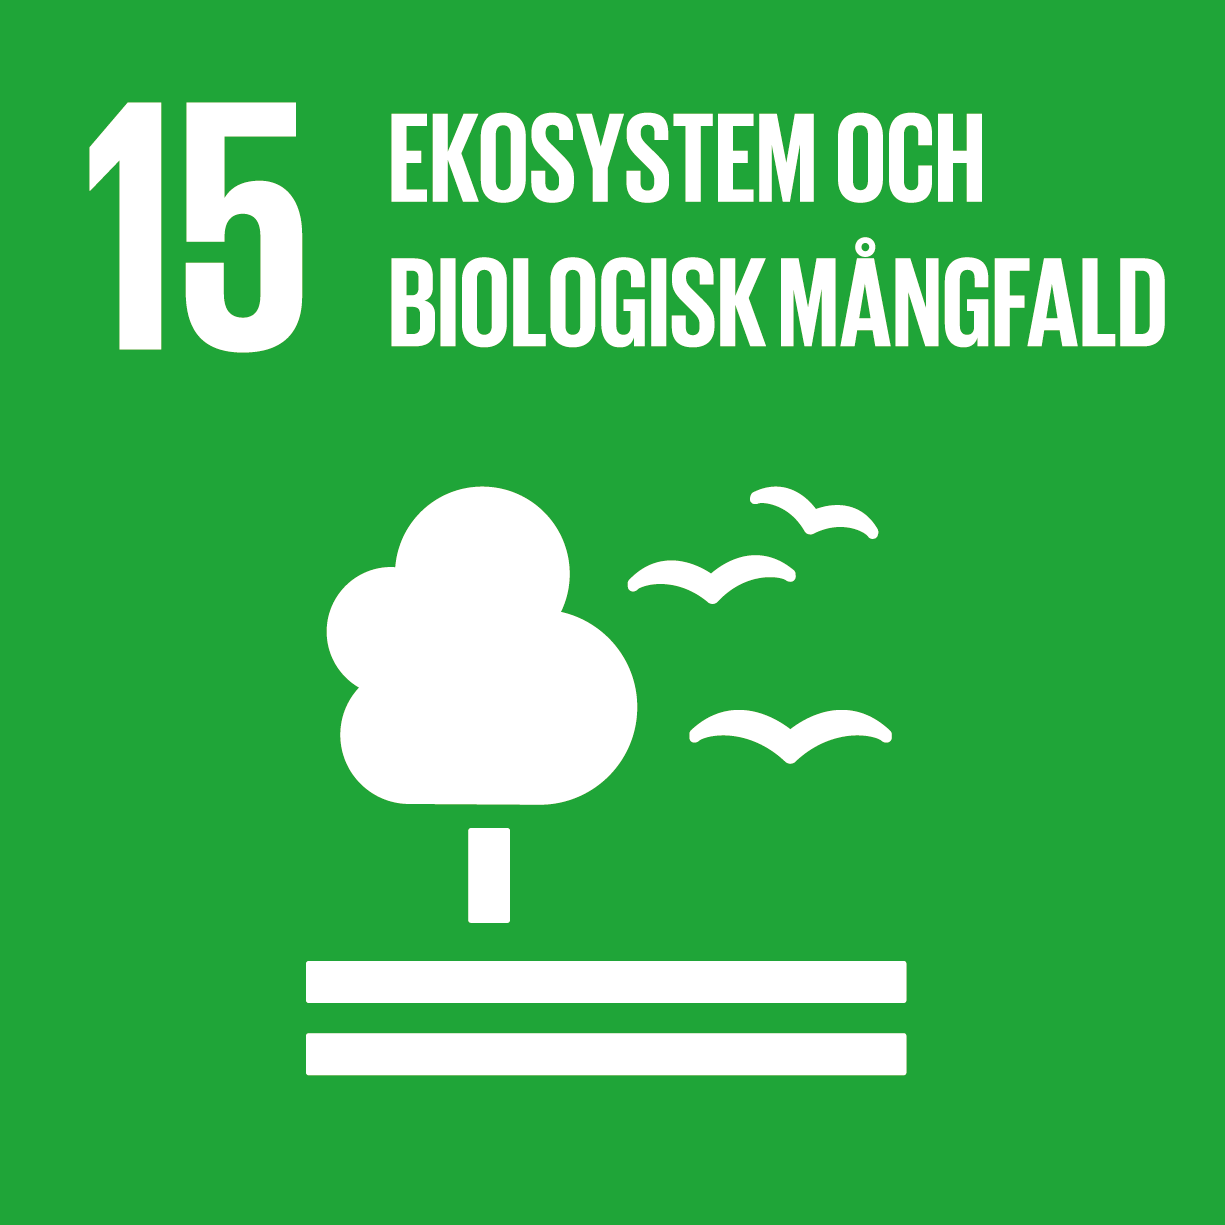 Ekosystem och biologisk mångfald, de globala målen nummer 15.